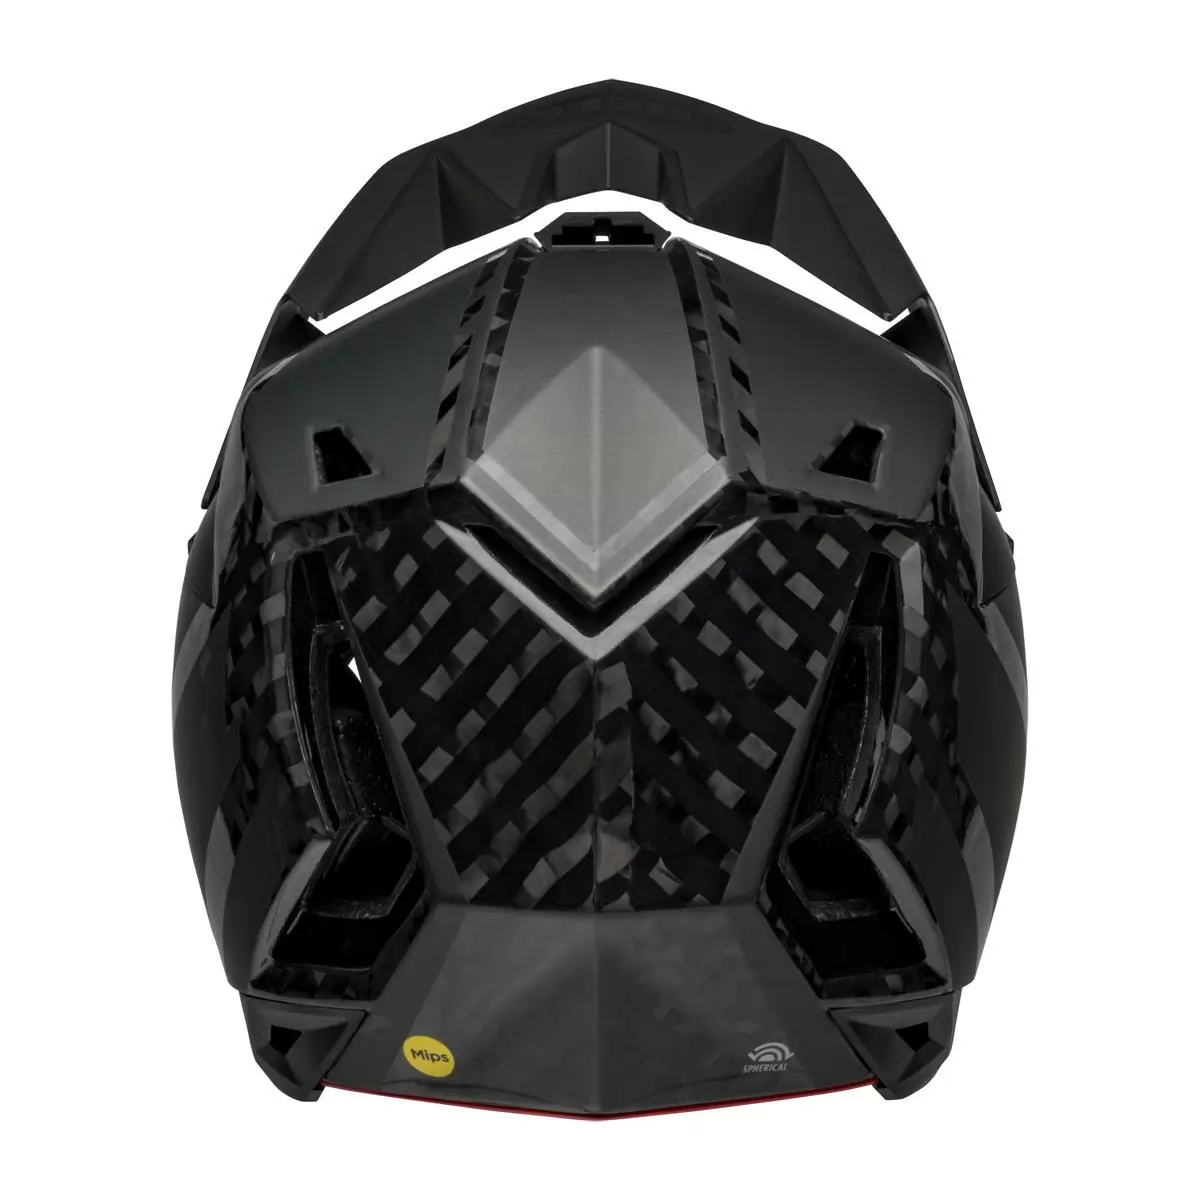 Full-10 Spherical Arise Matte / Gloss Black Carbon Full Face Helmet Size M (55-57cm) #5